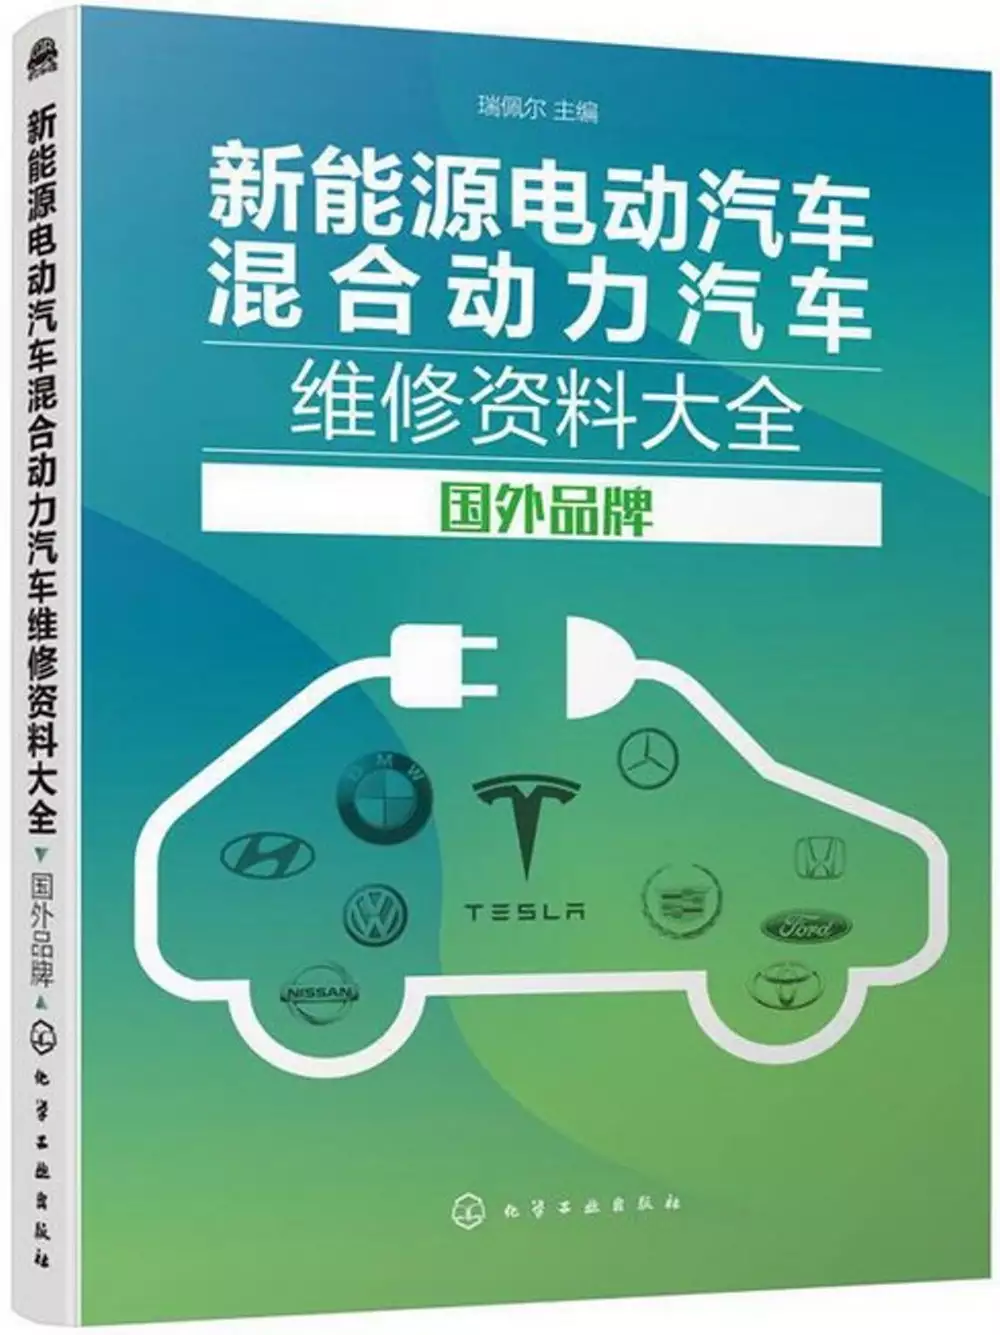 豐田 電動機 車的問題，包括PTT、Dcard、Mobile01找圖書和論文來找解法和答案更準確安心 